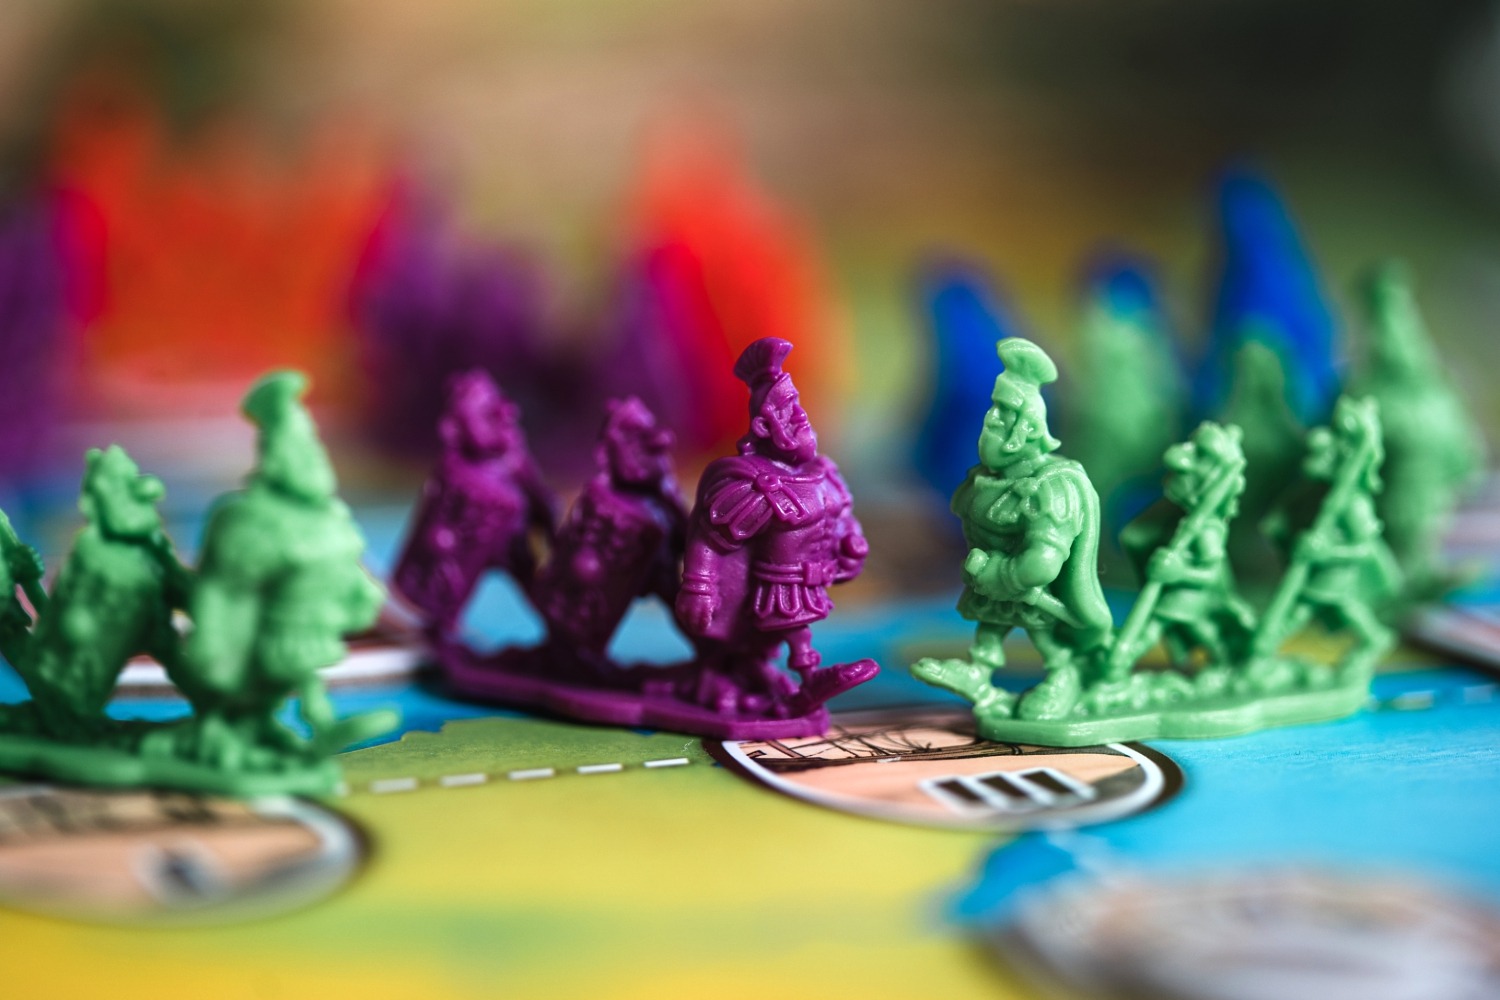 Caesar's Empire de César Synapse Holy grail games jeu de société boardgame 